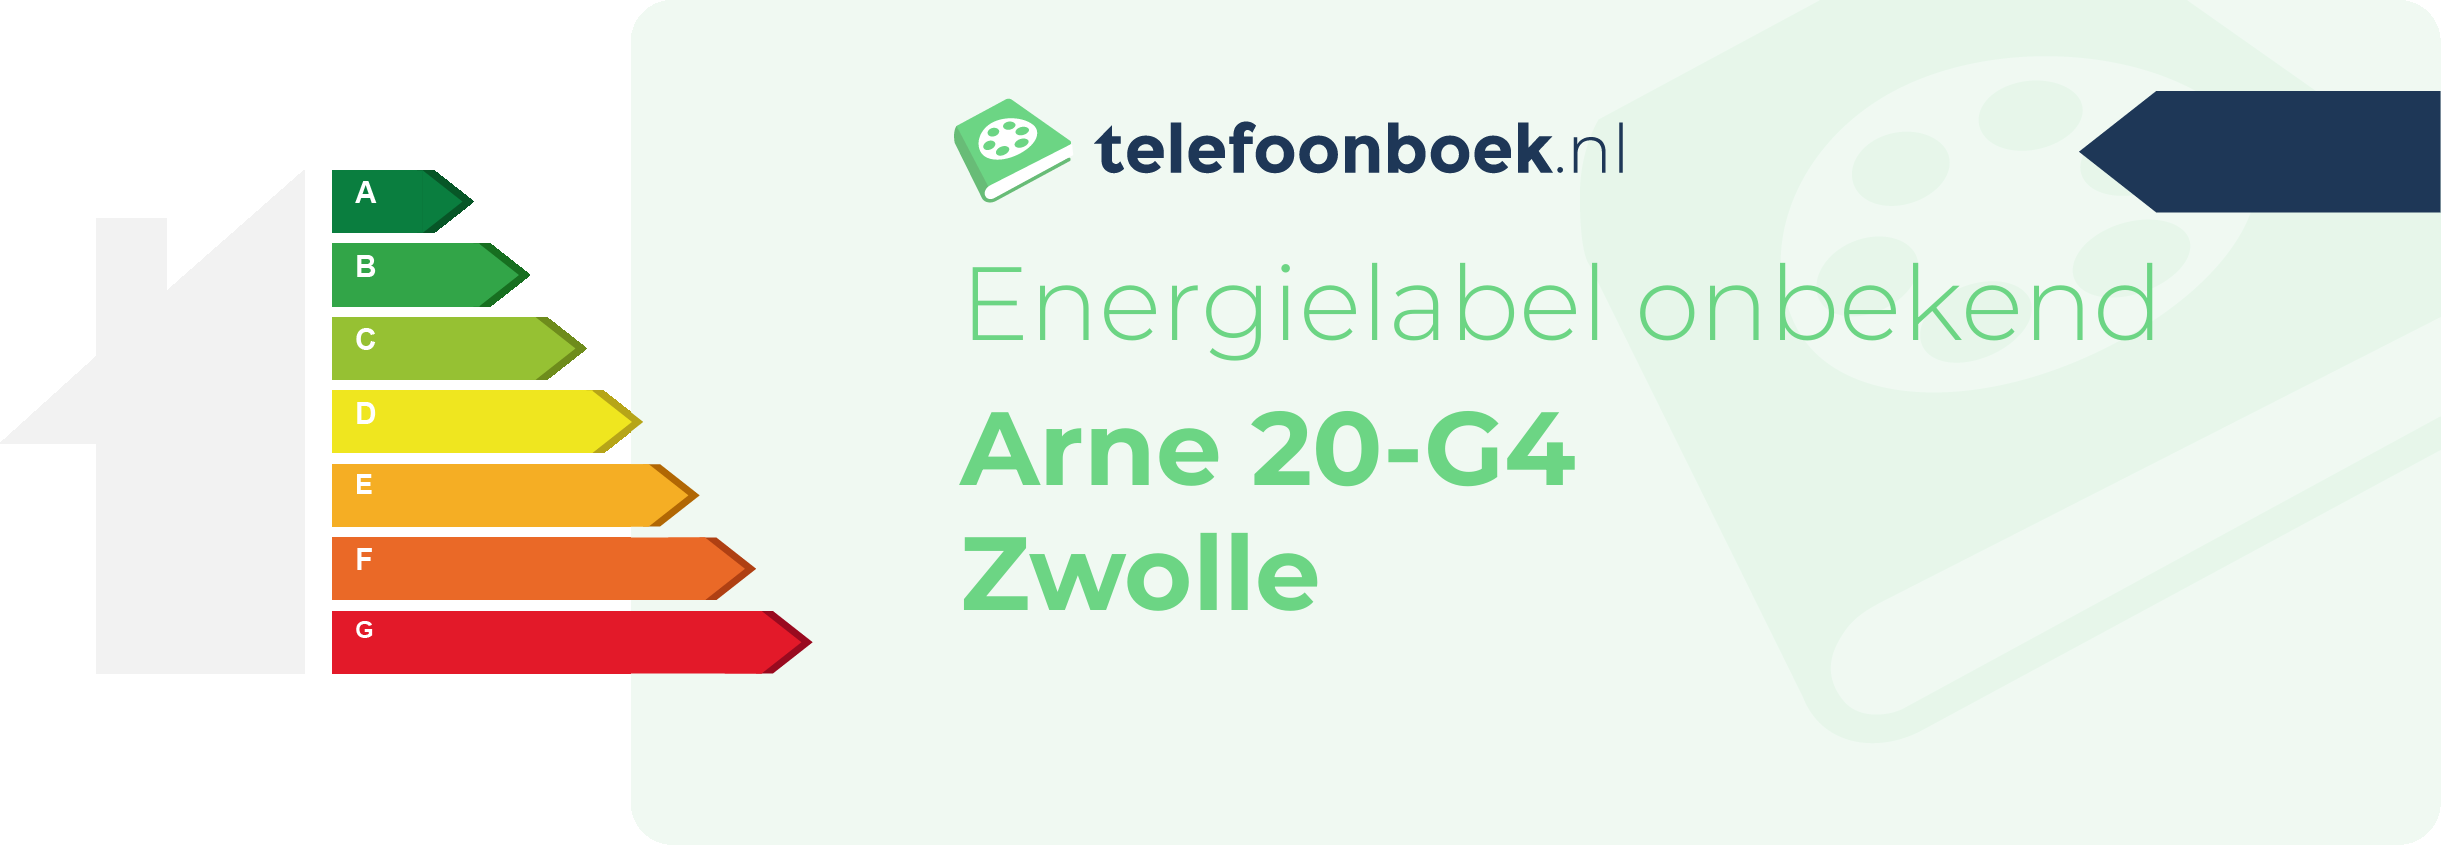 Energielabel Arne 20-G4 Zwolle